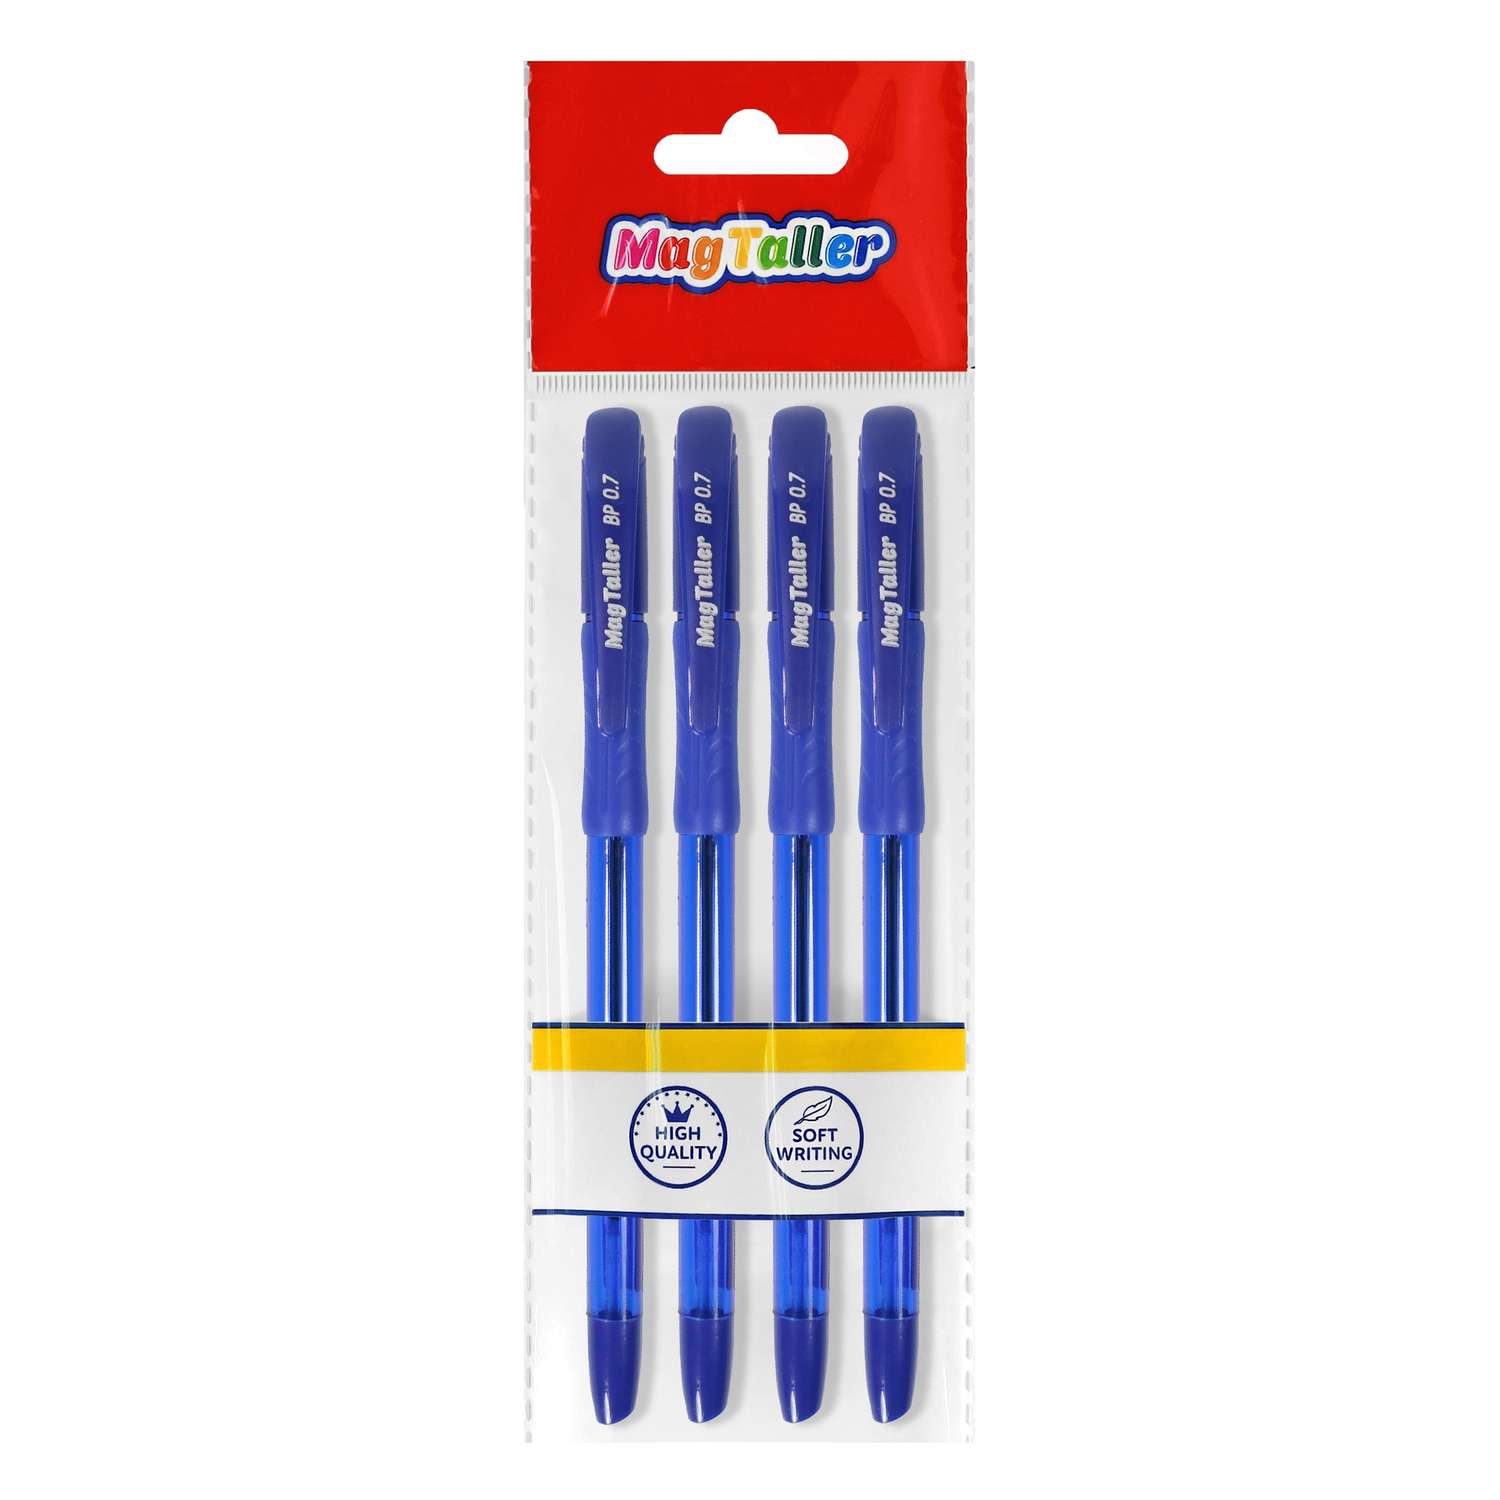 Ручки шариковые MAGTALLER Splash синие 4 штуки - фото 1